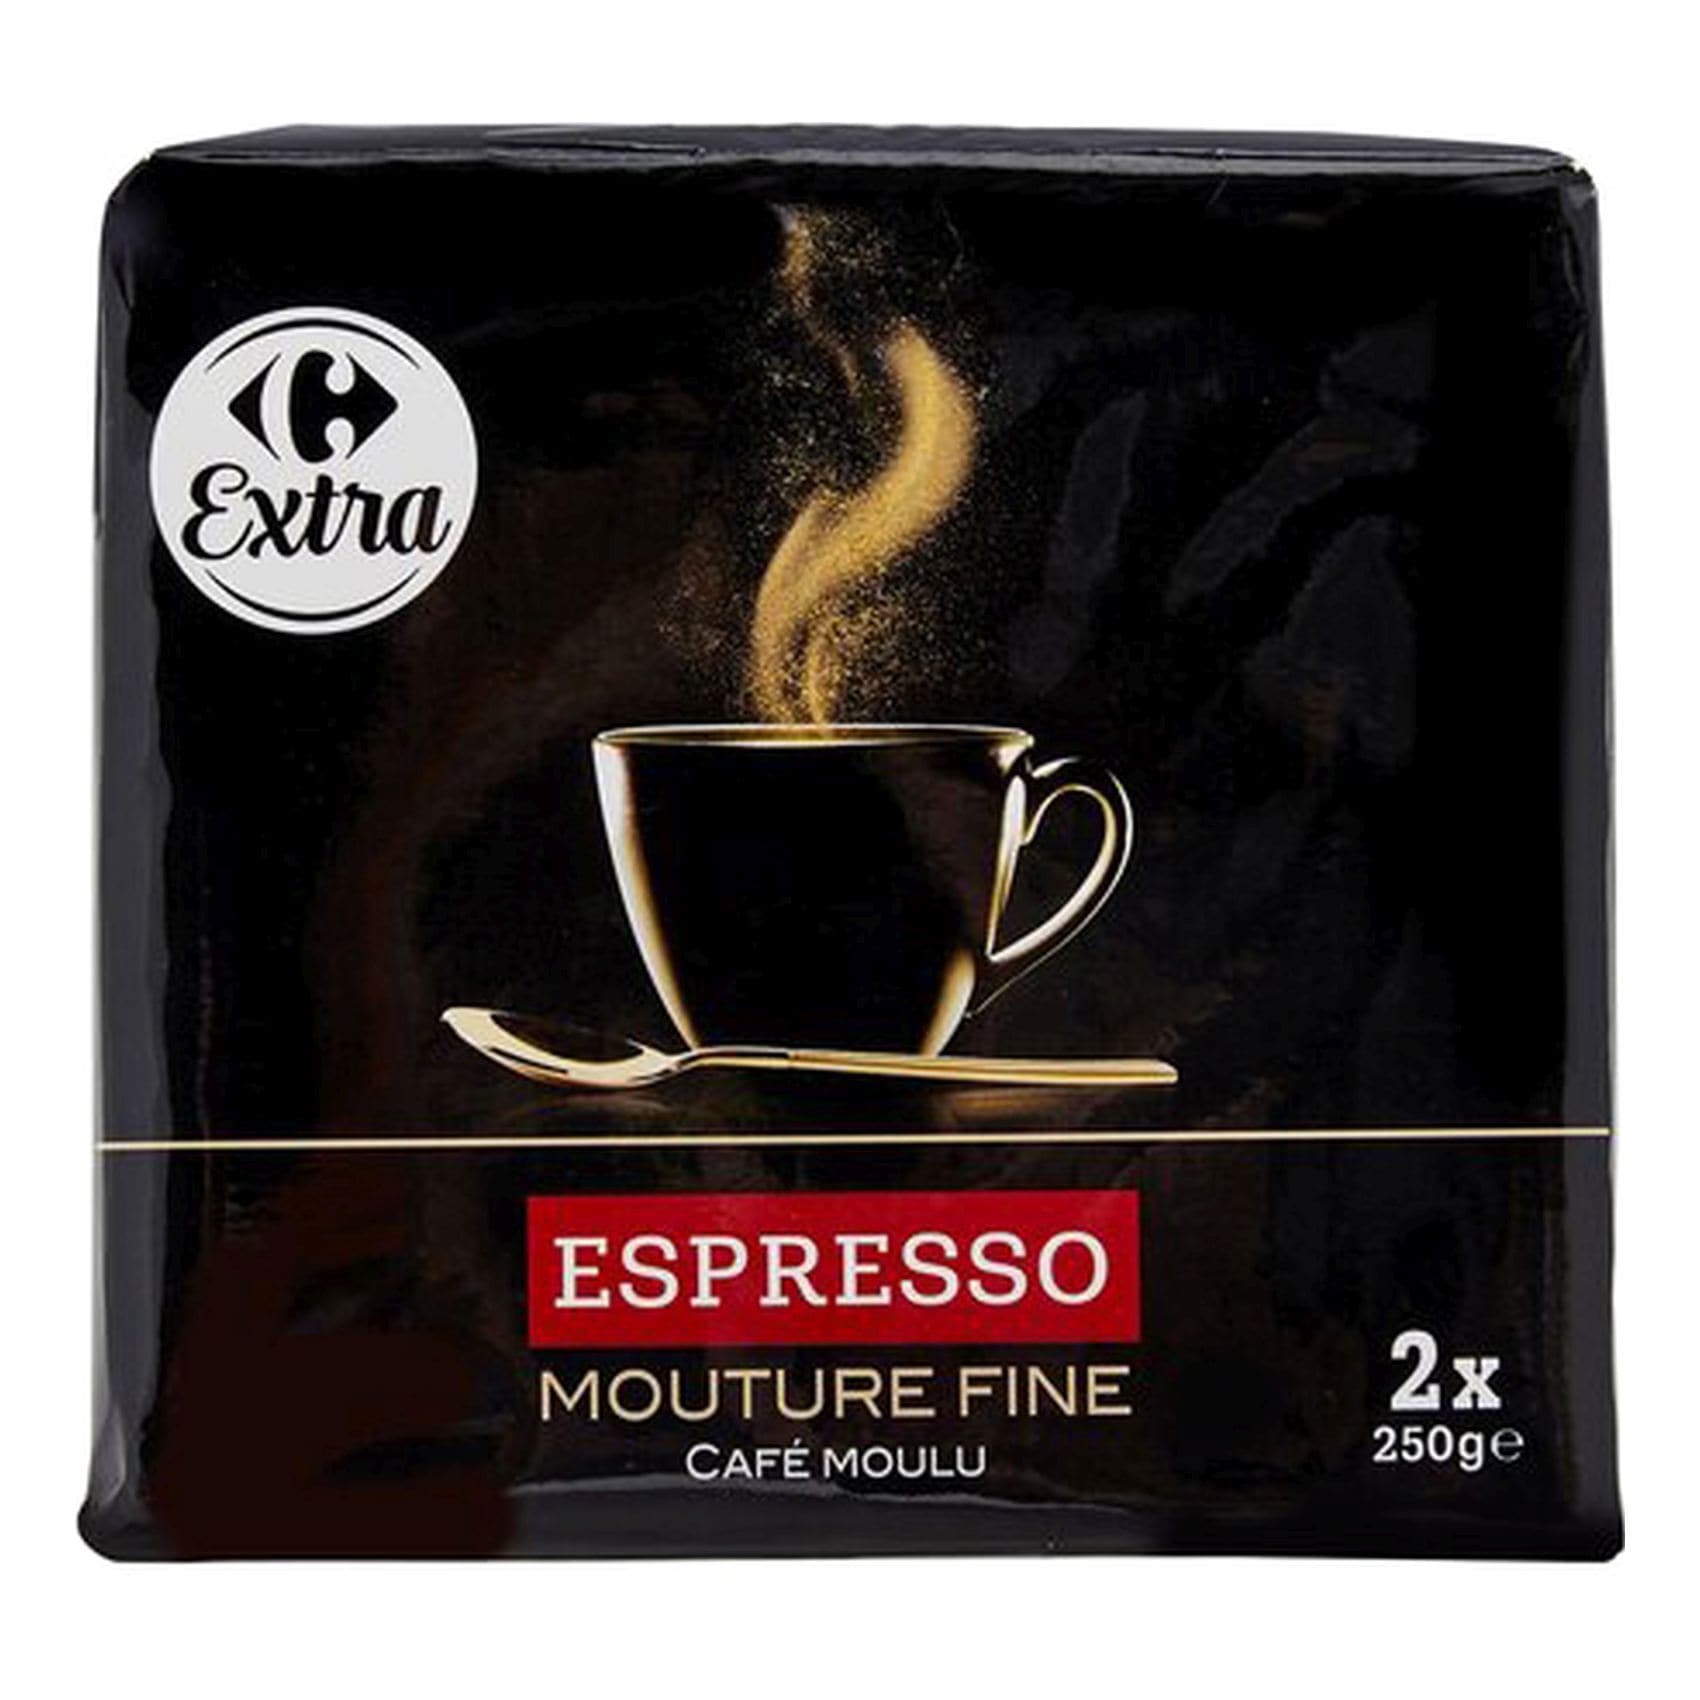 Starbucks Espresso Blonde Roast 200 g grains de café - Crema